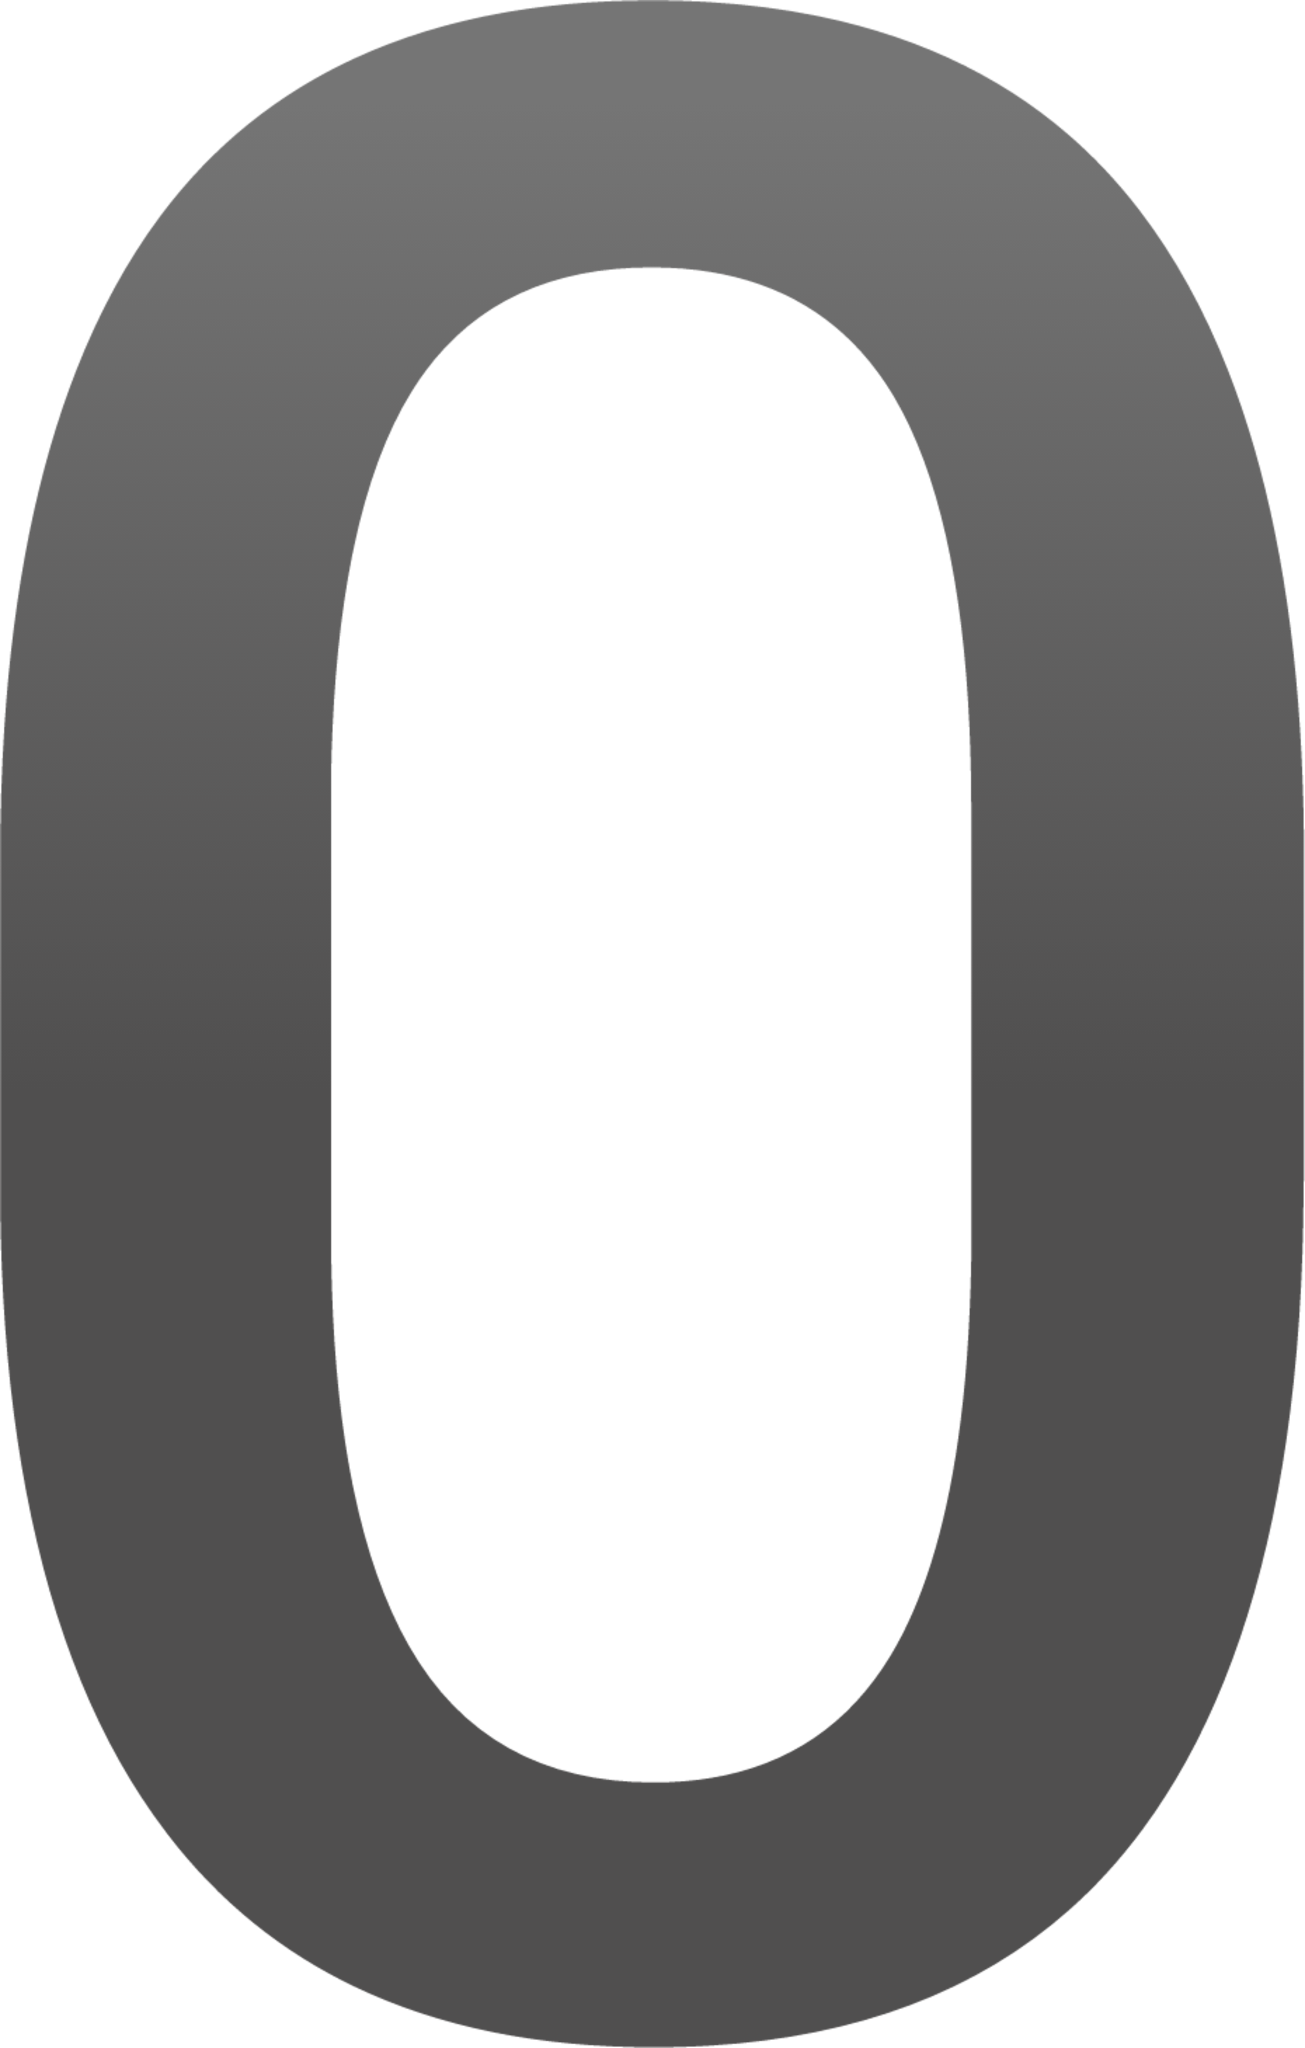 digit zero emoji